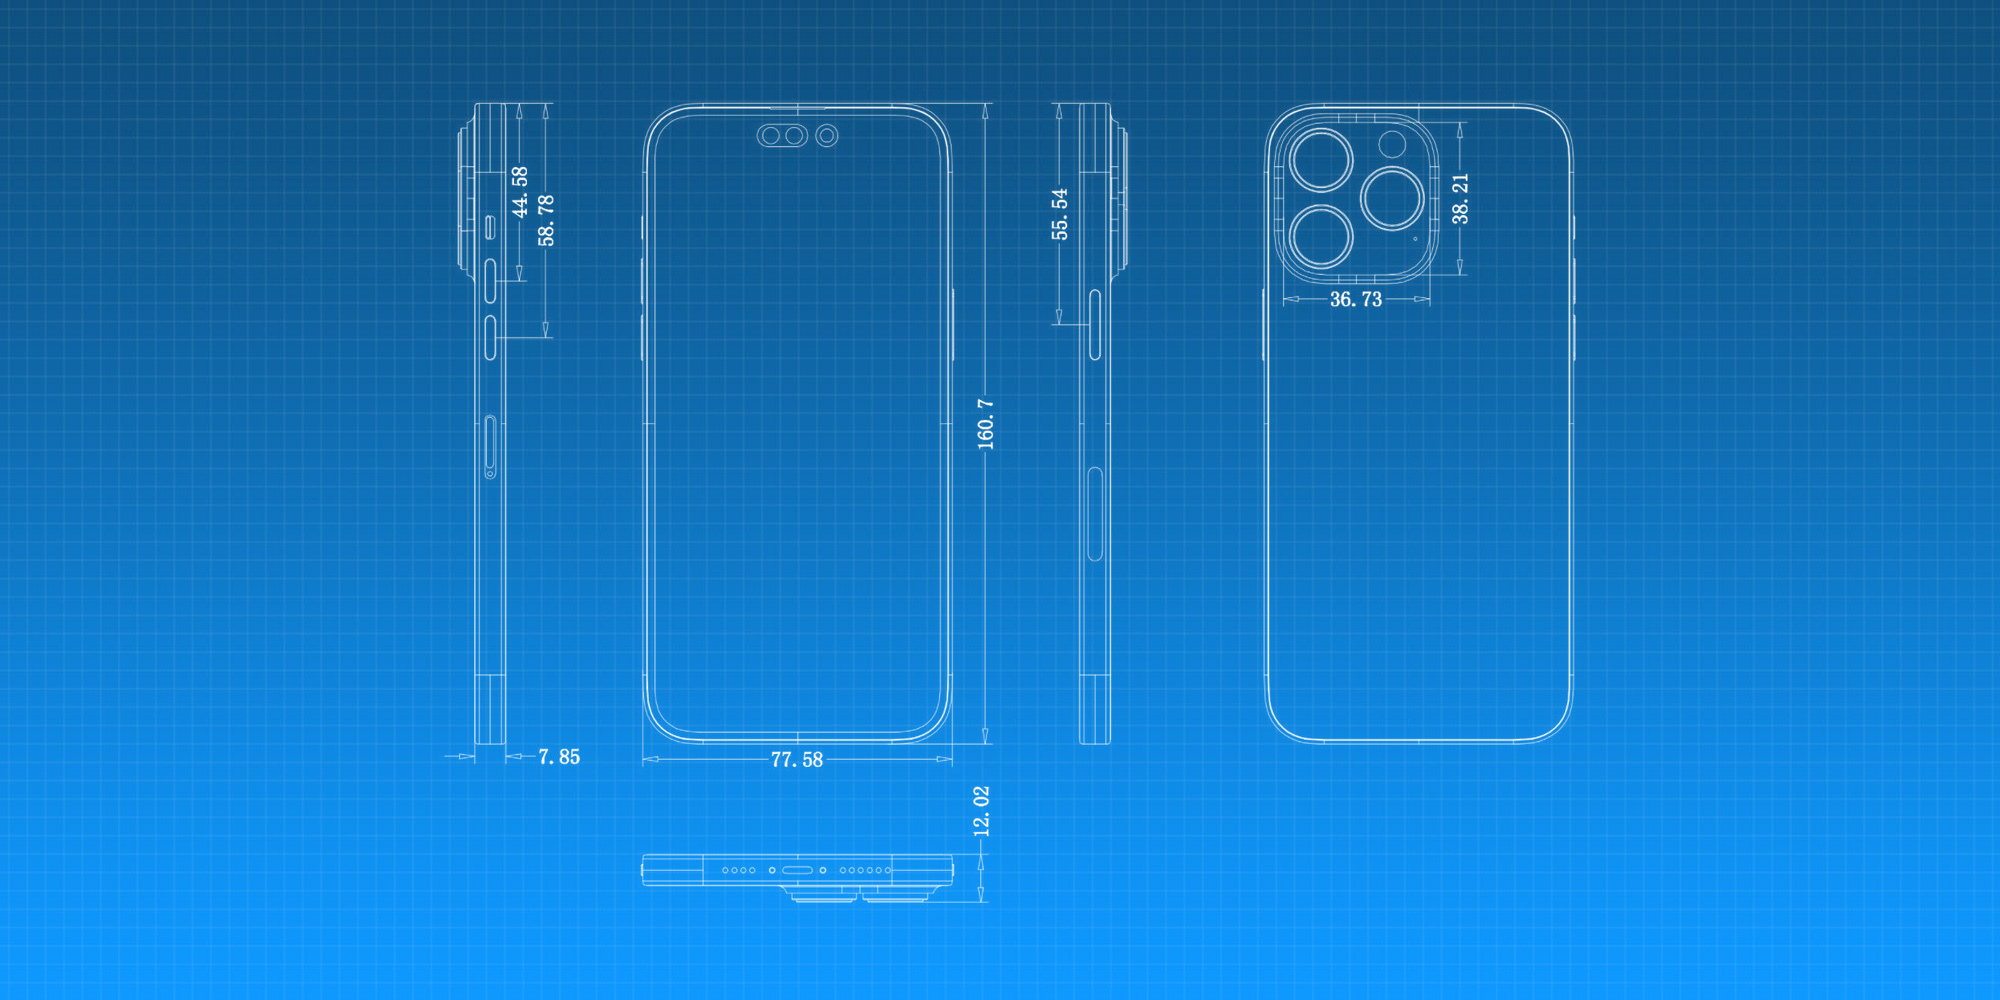 Ảnh phác thảo của iPhone 14 Pro cho thấy cụm camera sau không đổi và tai thỏ đã thay đổi